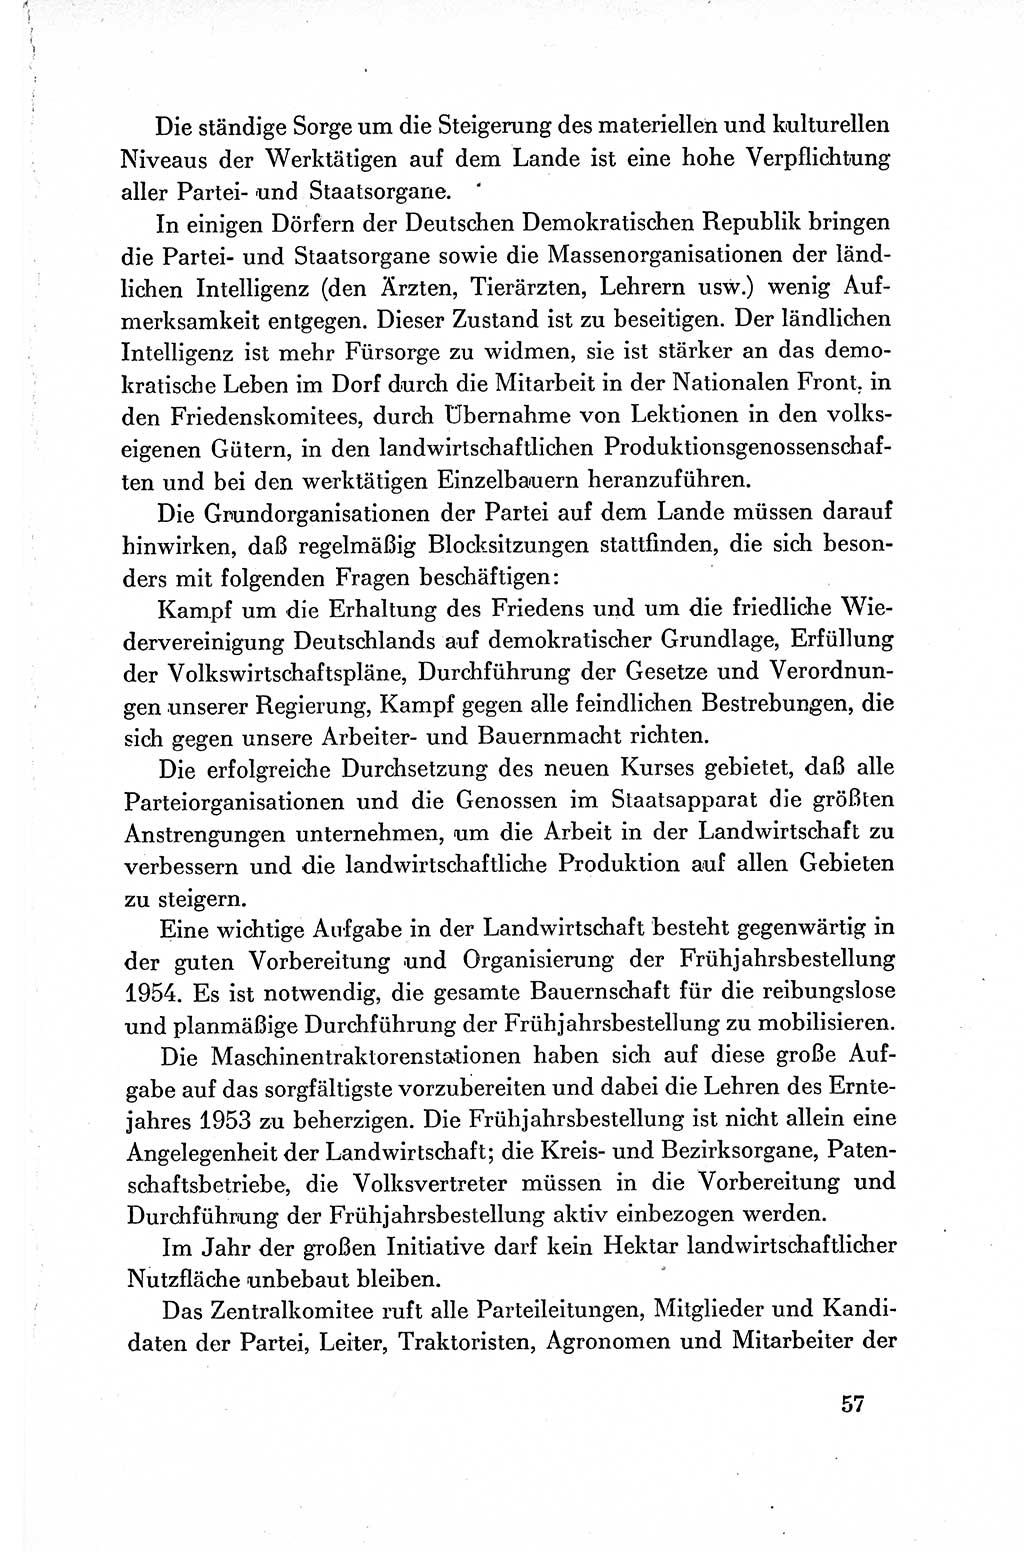 Dokumente der Sozialistischen Einheitspartei Deutschlands (SED) [Deutsche Demokratische Republik (DDR)] 1954-1955, Seite 57 (Dok. SED DDR 1954-1955, S. 57)